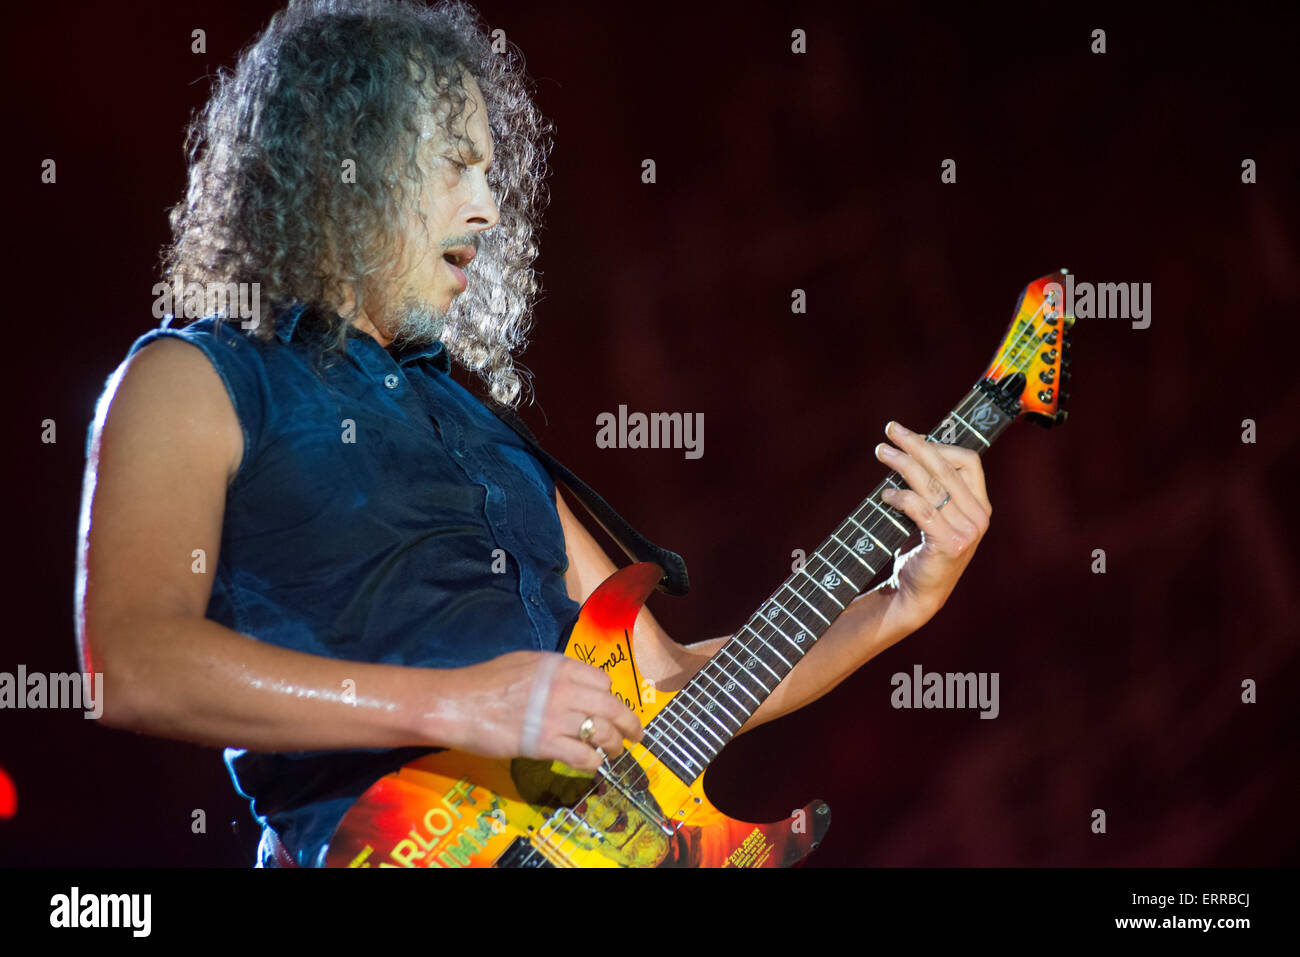 Junio 6, 2015 - el guitarrista de Metallica, Kirk Hammett, Metallica, jugar  a un auditorio repleto de fanáticos de los X Games en el 2015 X-Games, el  circuito de las Américas, en